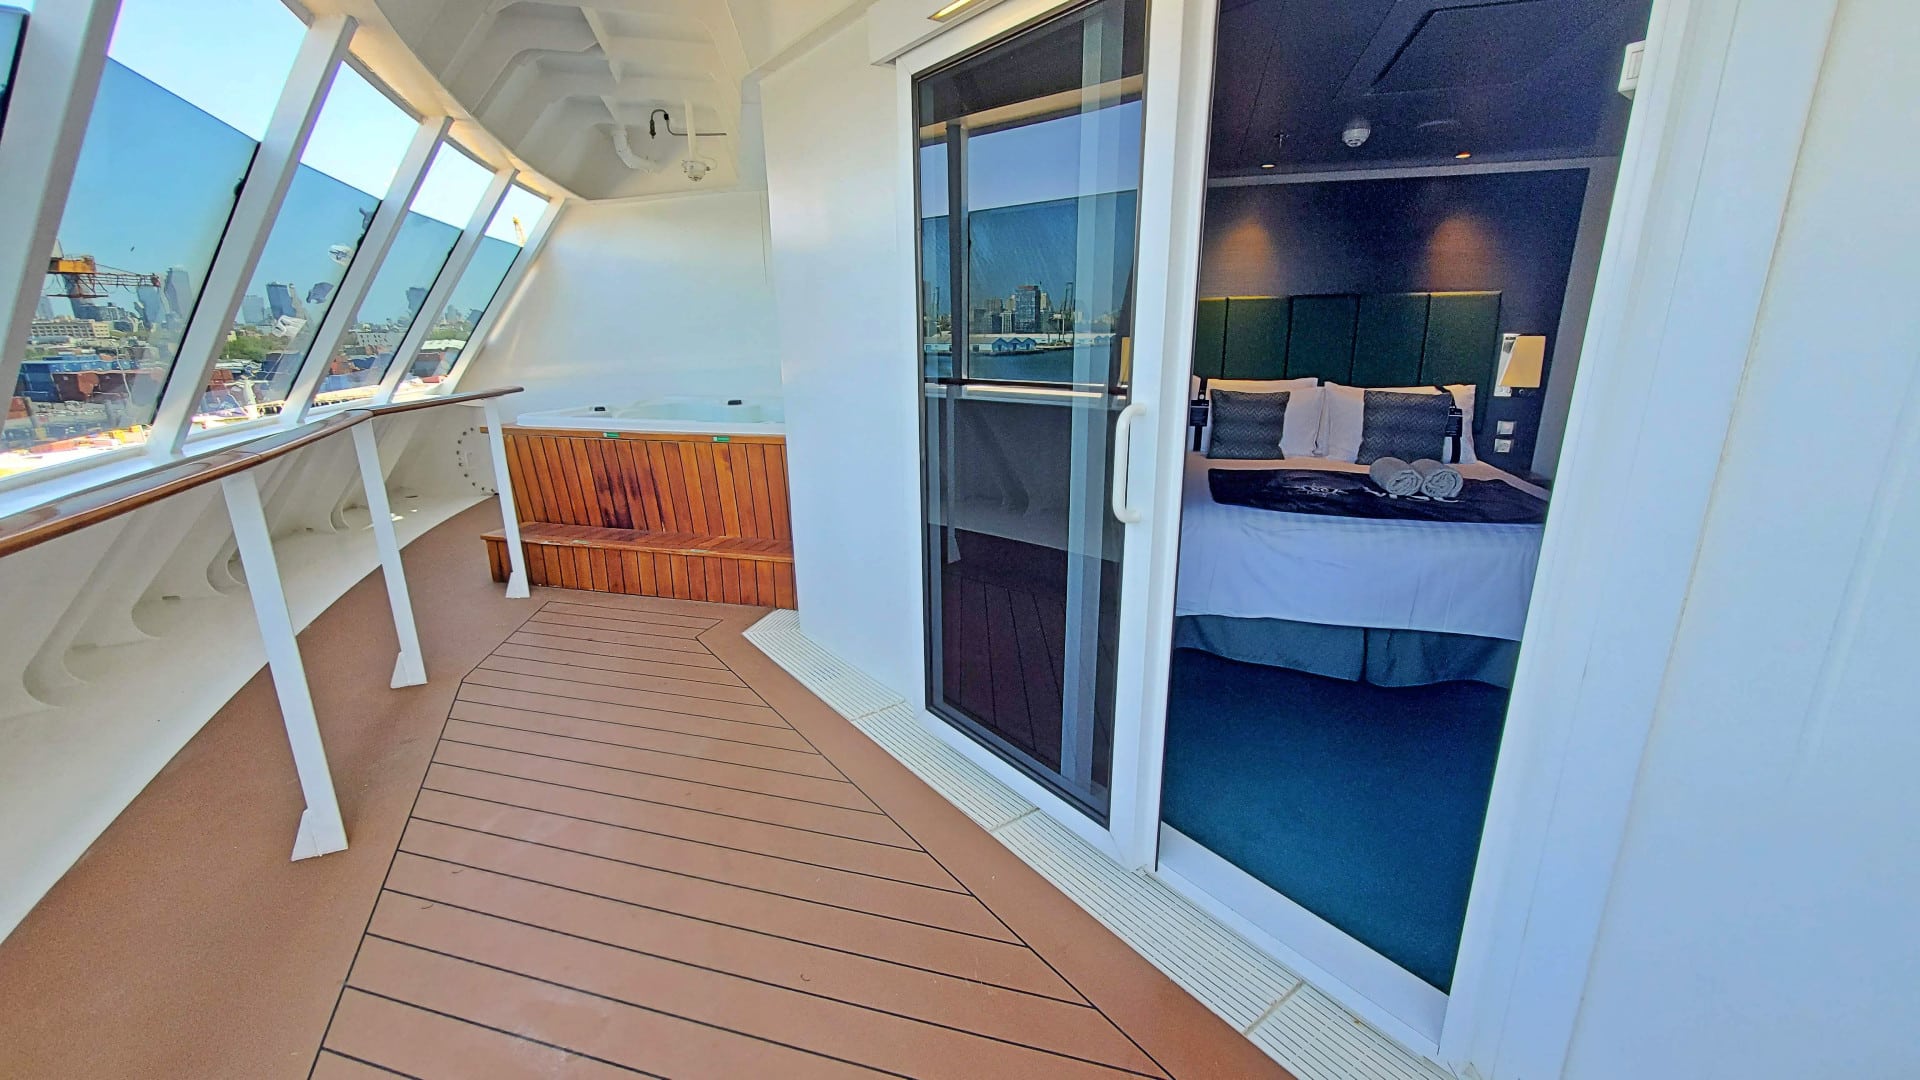 Suite on the MSC Meraviglia cruise ship